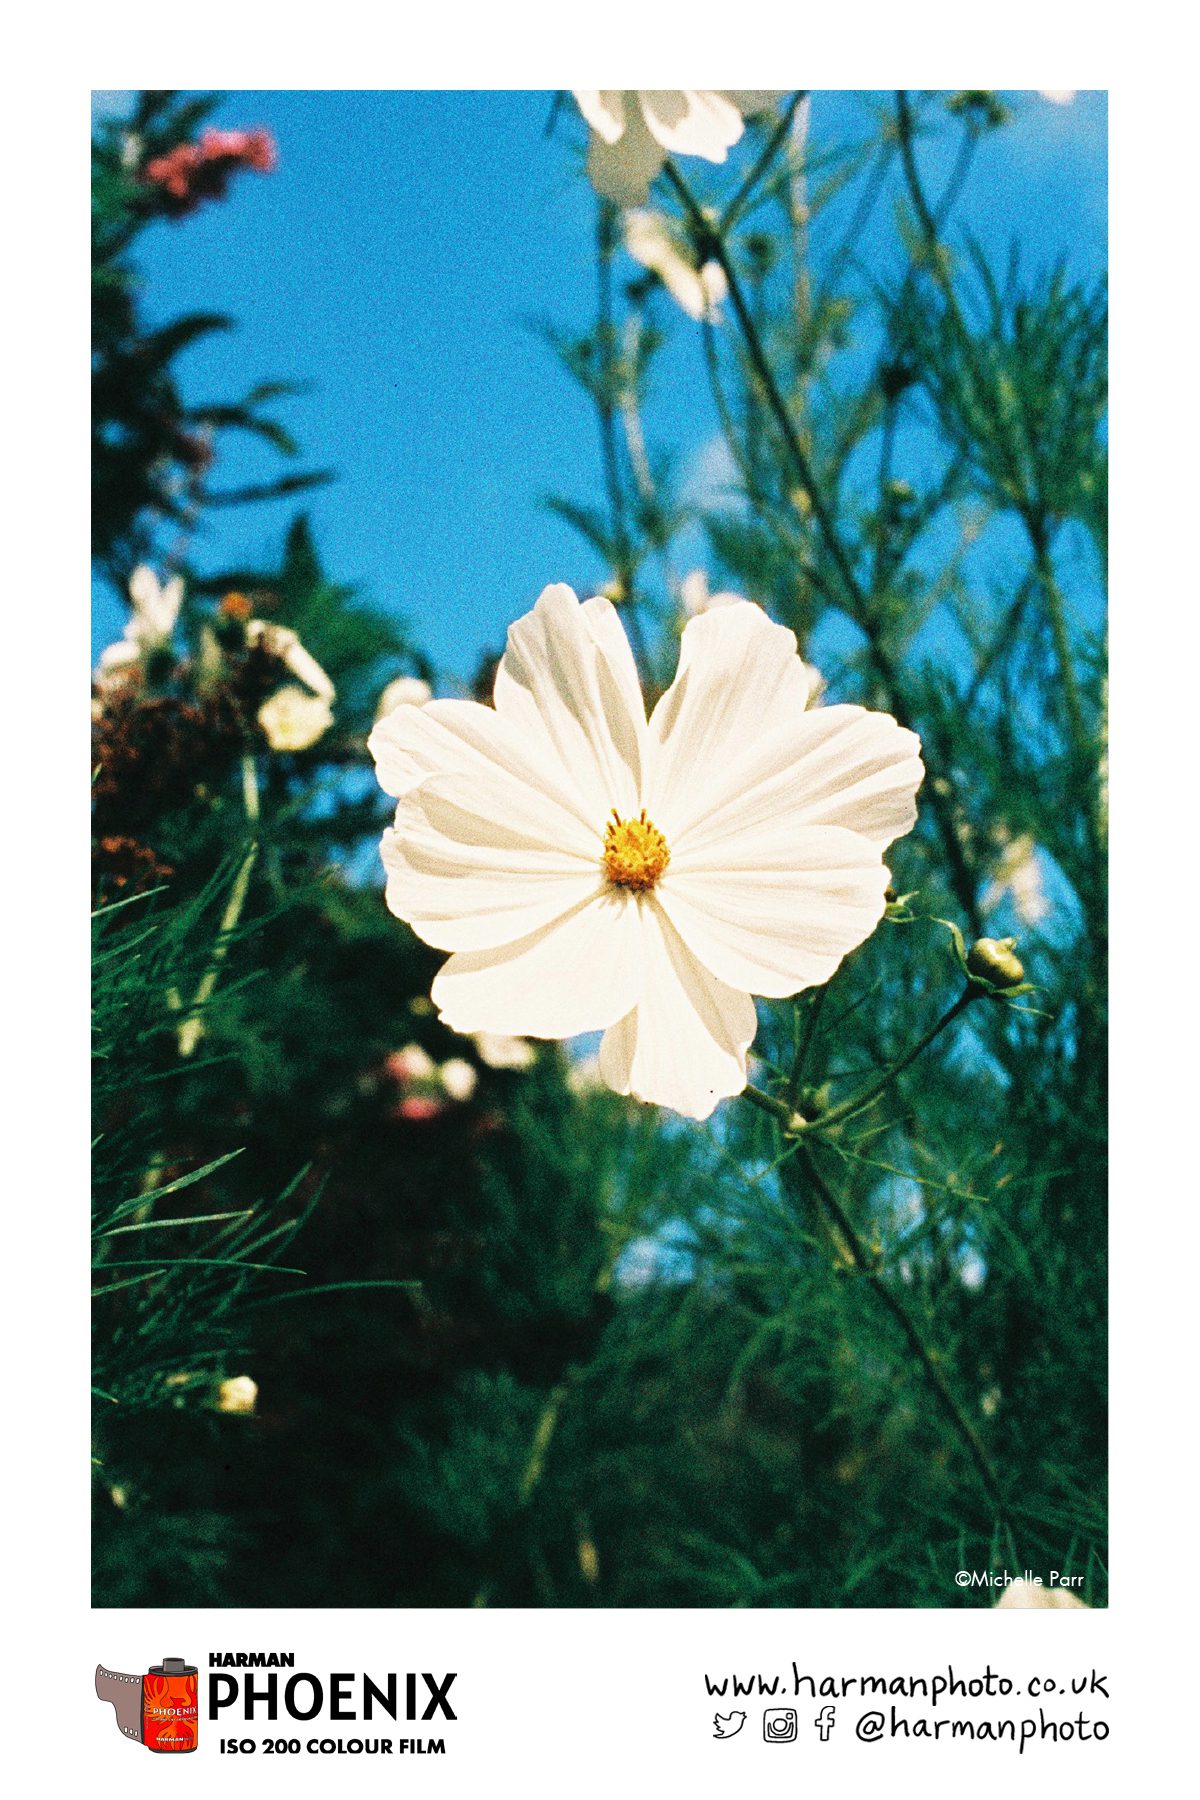 White flower against blue skyFlower shot on HARMAN Phoenix colour film